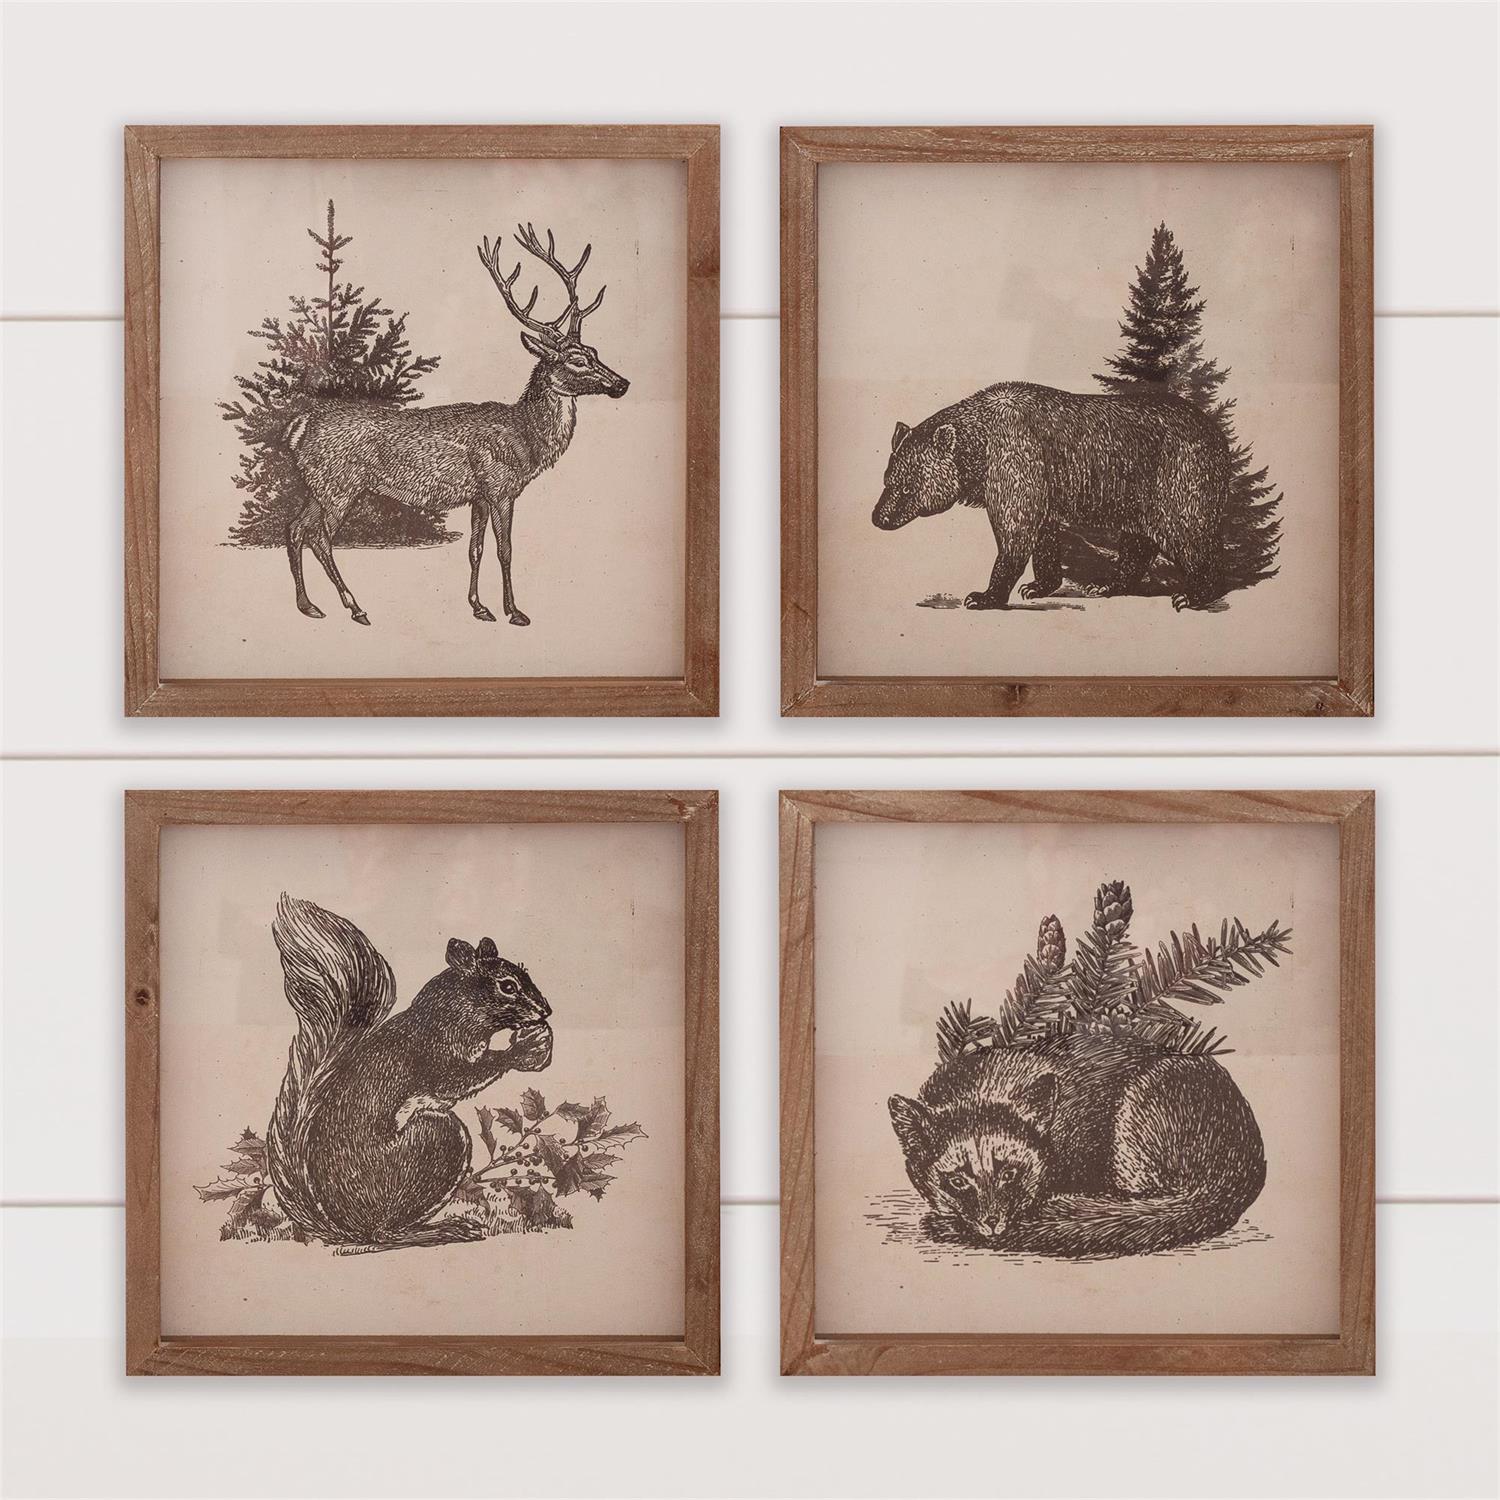 Framed Prints - Antique Forest Animals